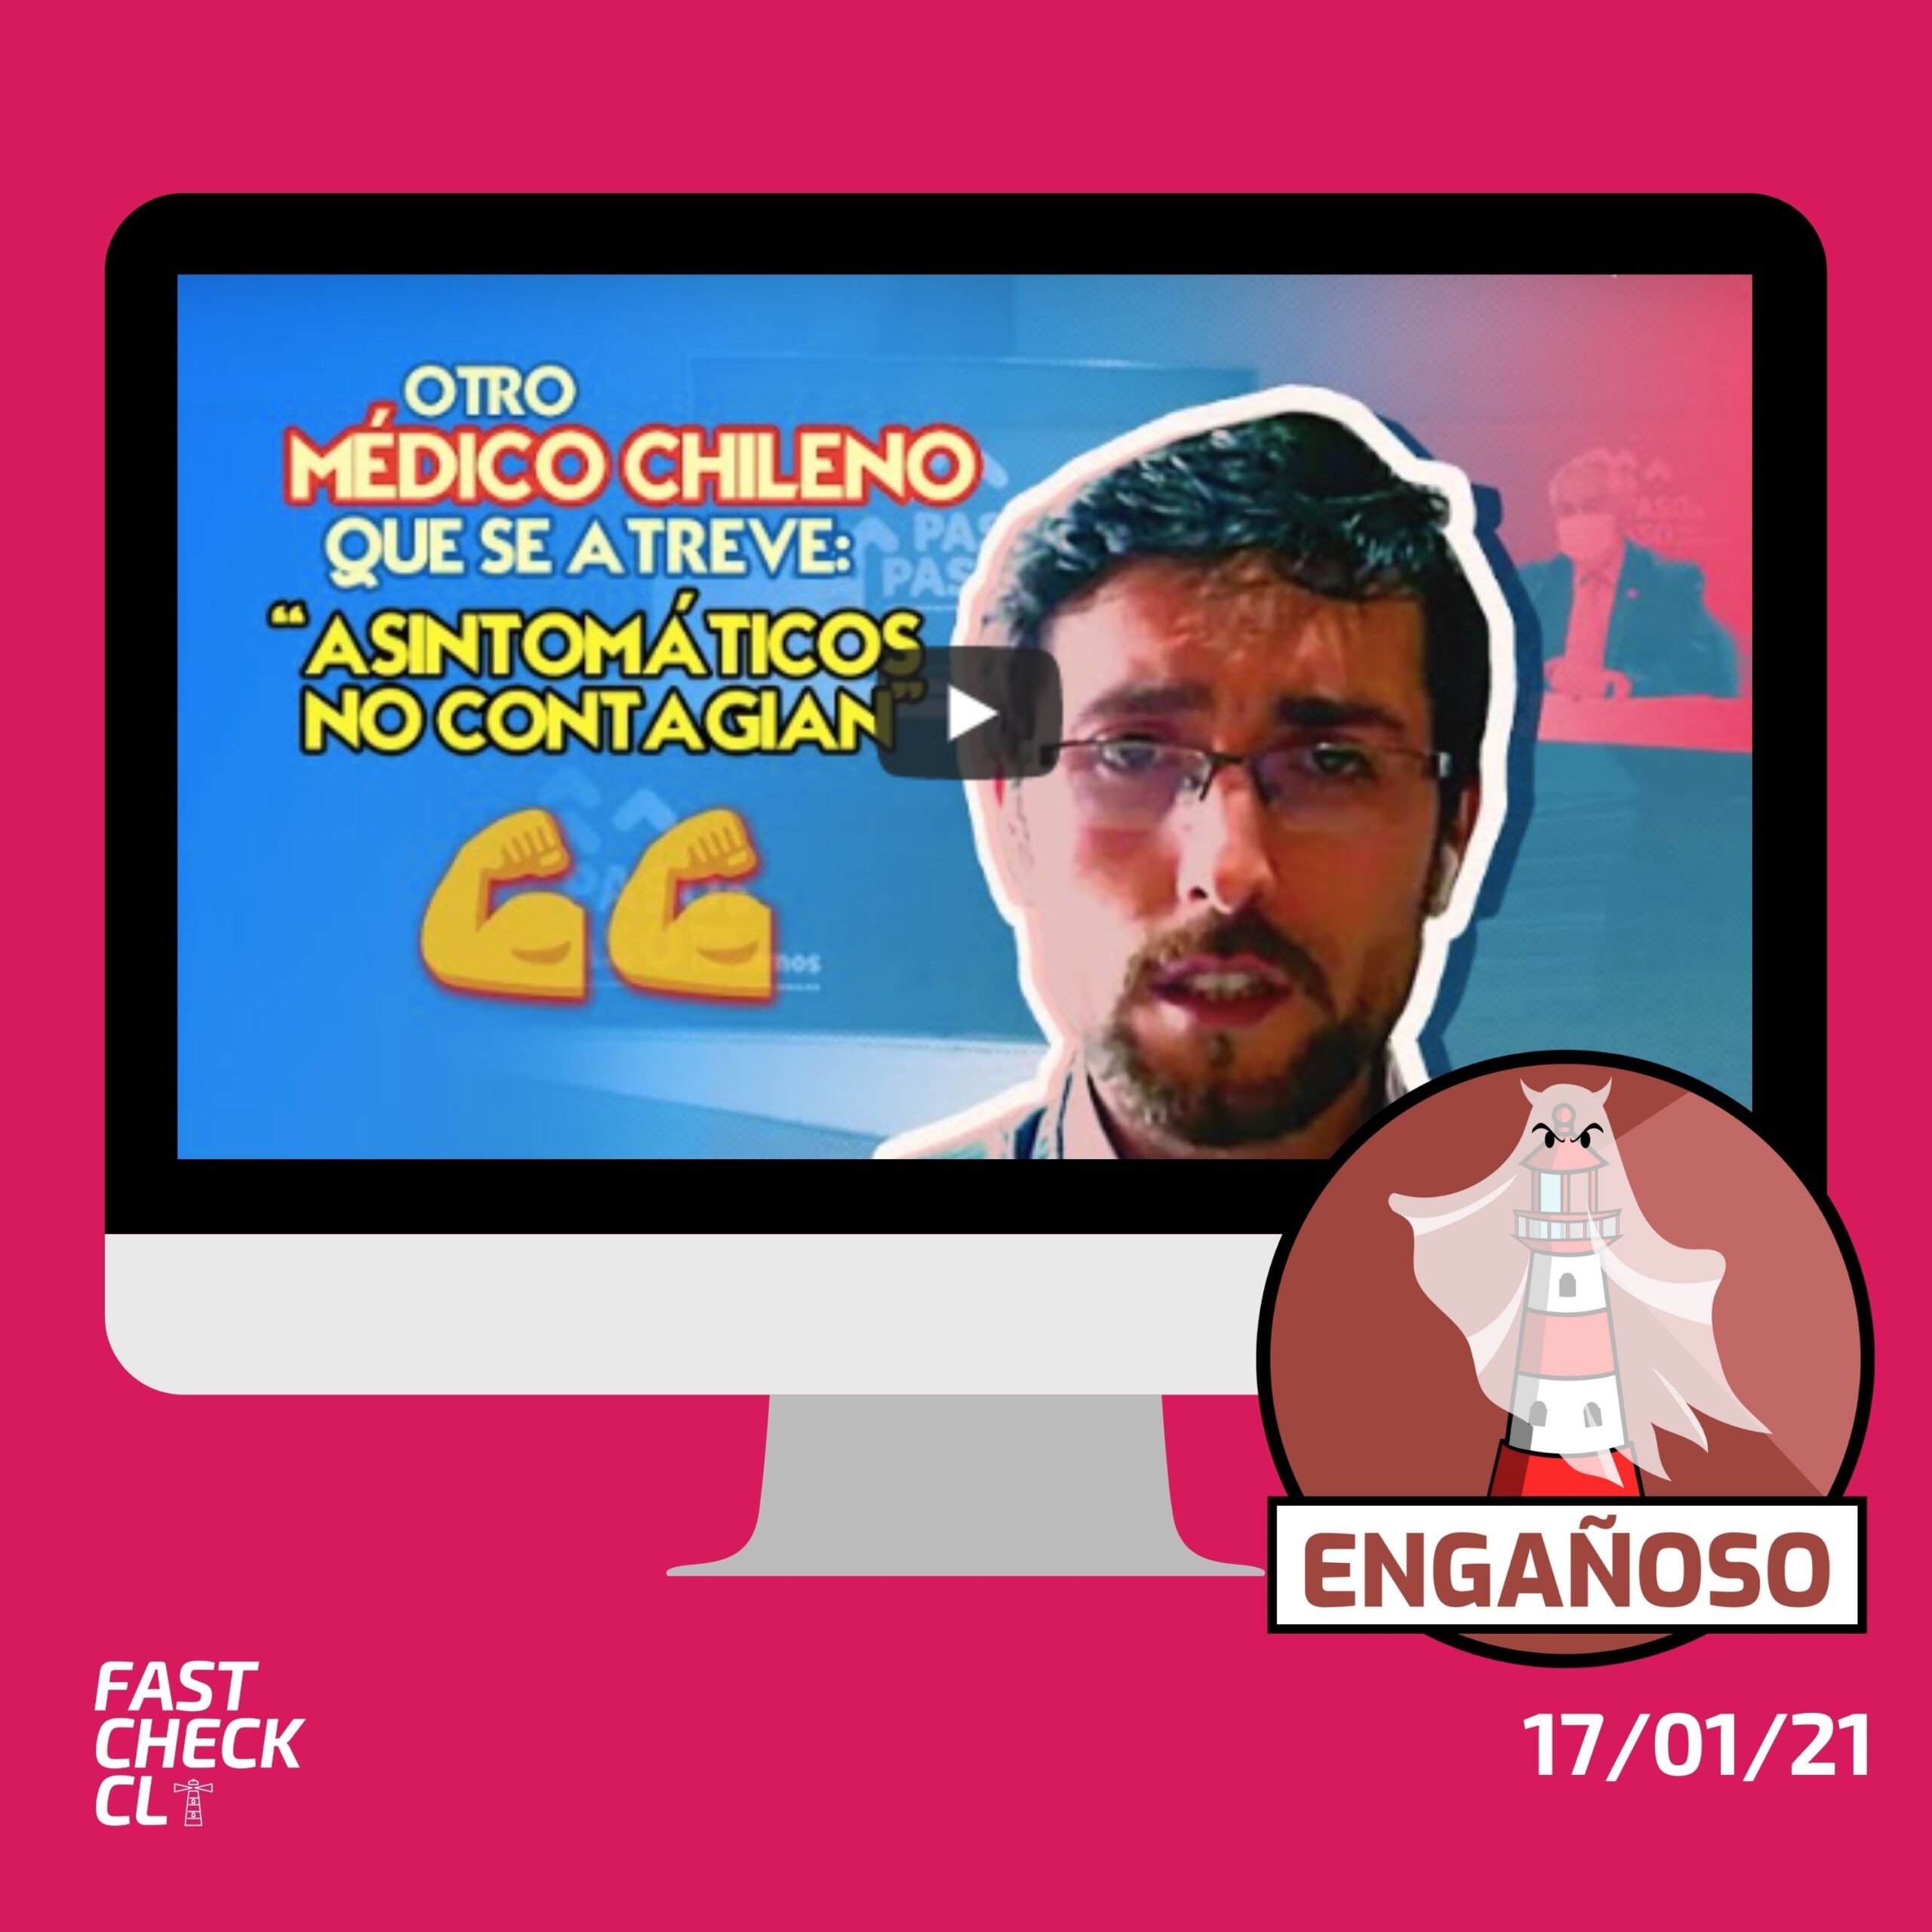 Read more about the article (Video Dan Macías) “Asintomáticos no contagian”: #Engañoso